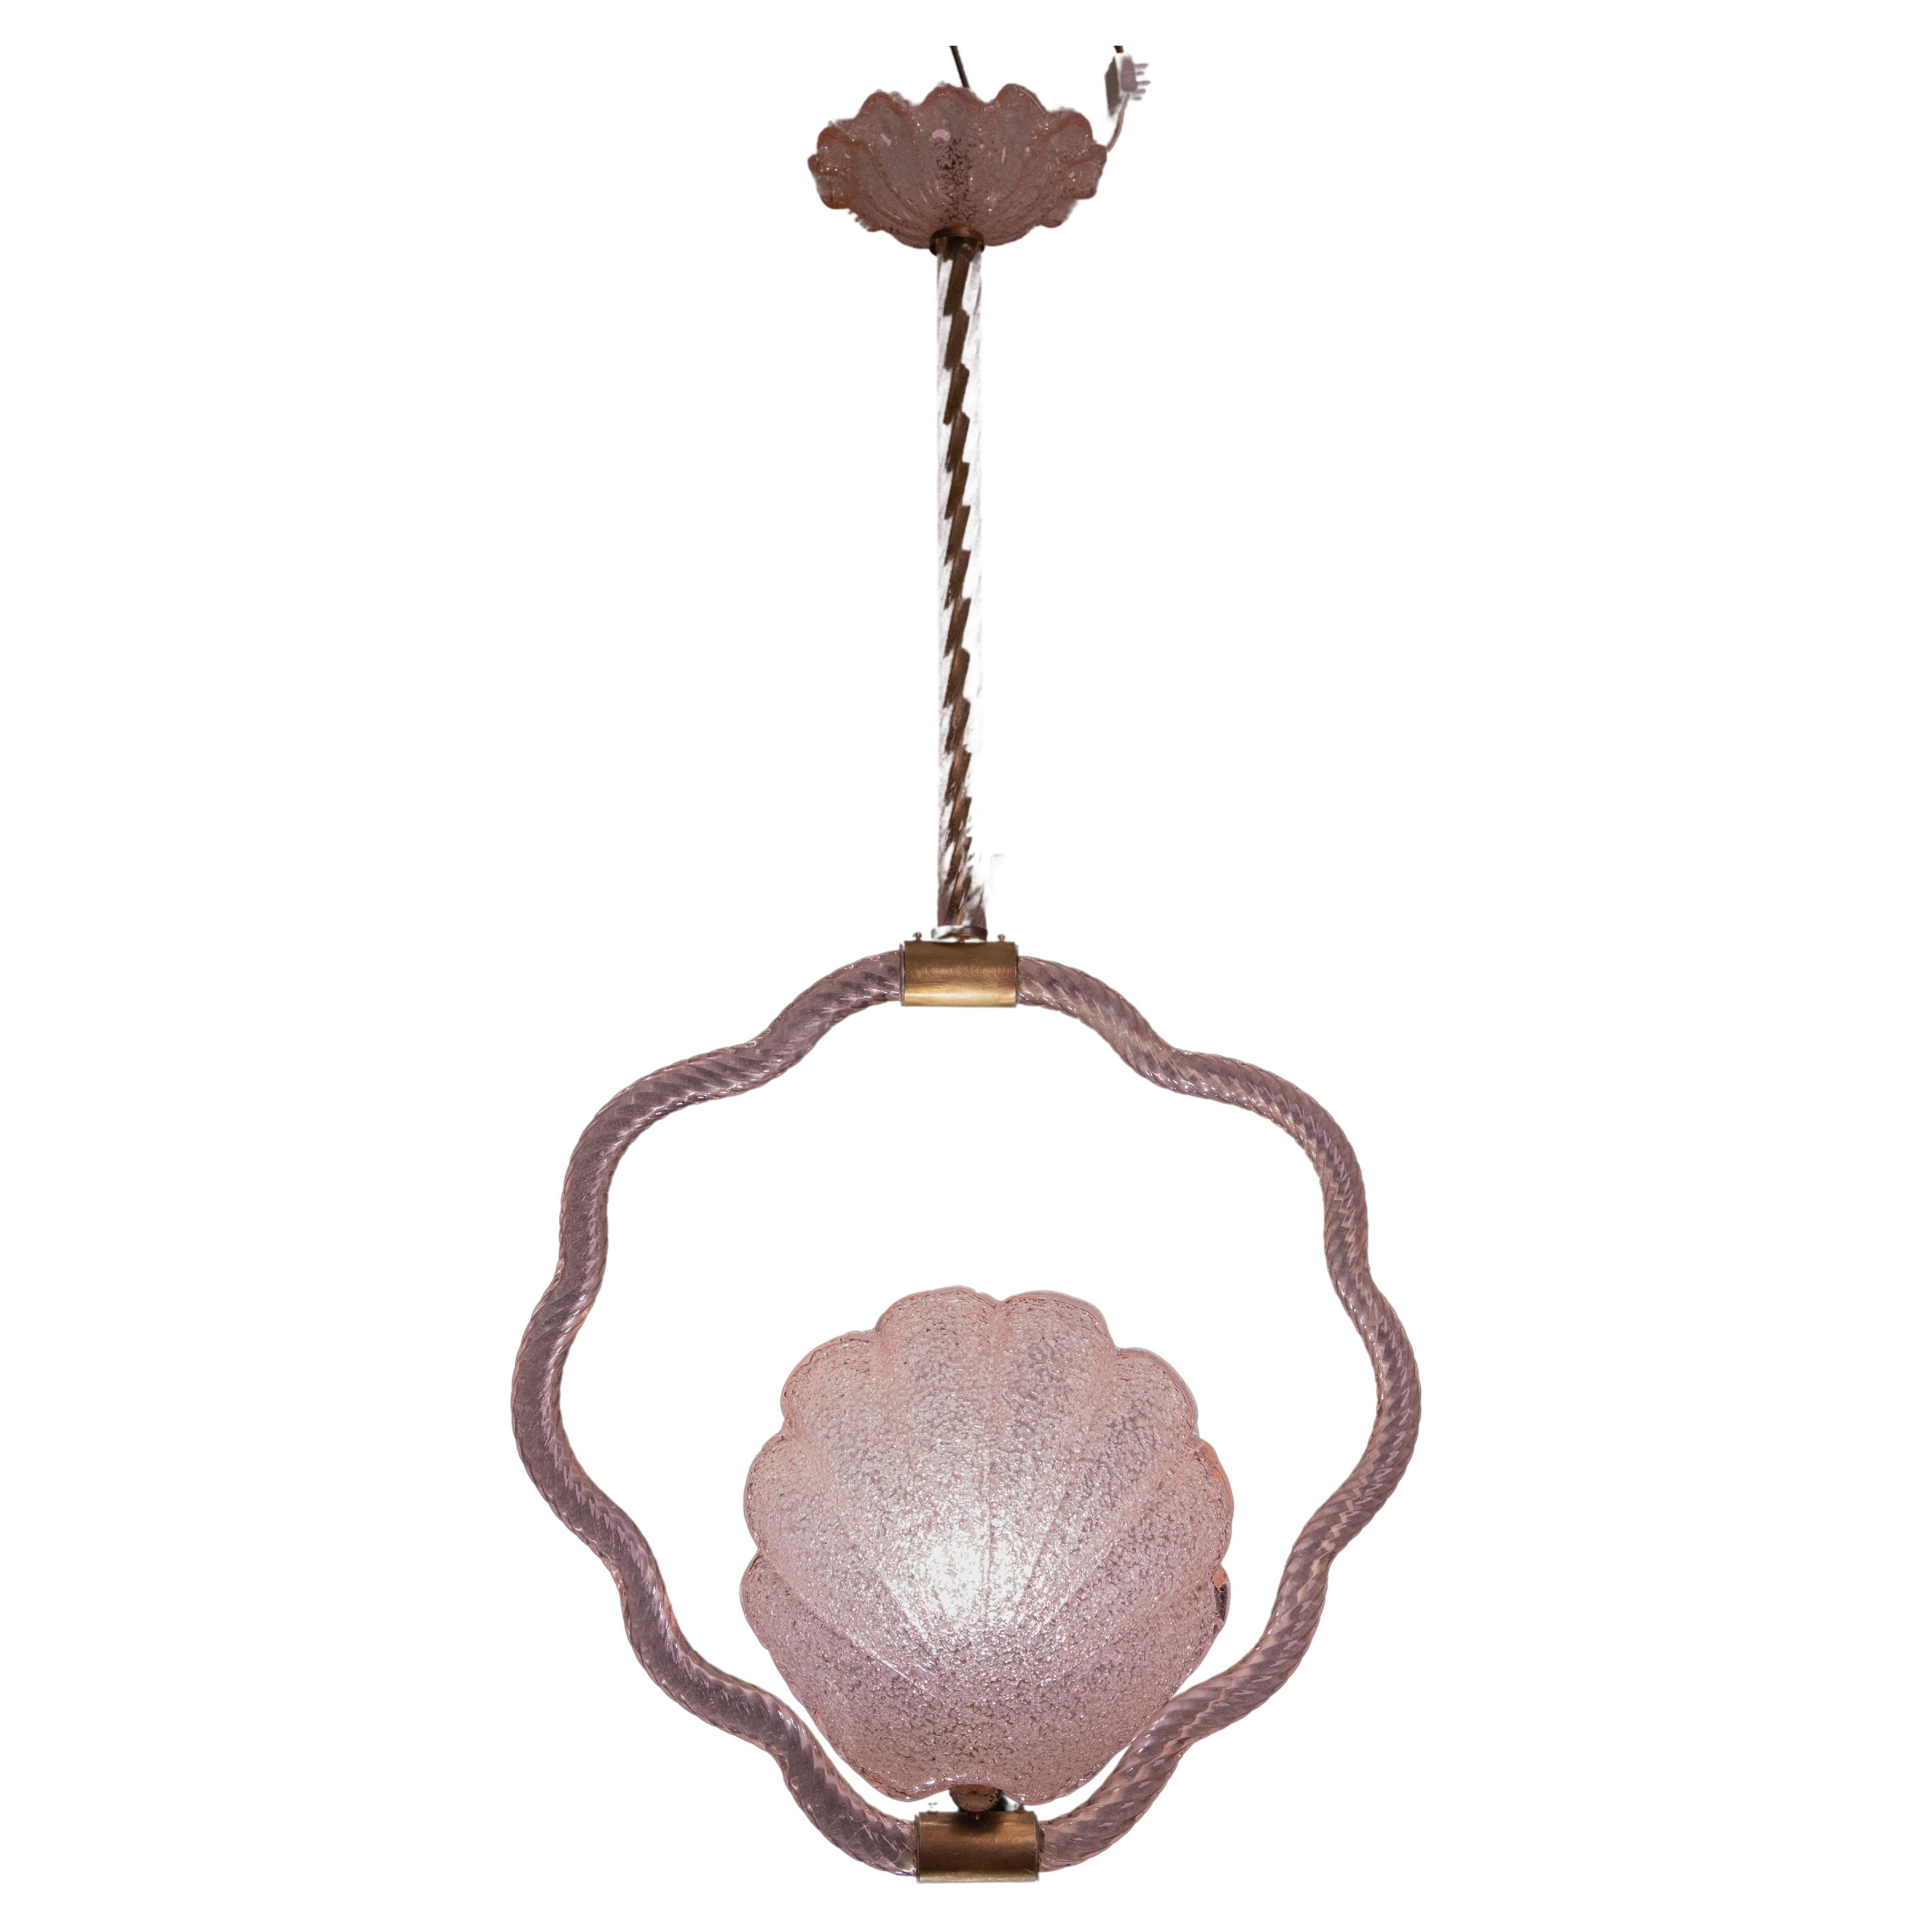 Superbe lustre de Murano réalisé par l'artiste Barovier&Toso avec un verre rose rare.
La suspension se compose de 5 éléments en verre et d'une structure en laiton, en forme de coquillage.
Il permet de monter une lampe européenne standard e27.
Il